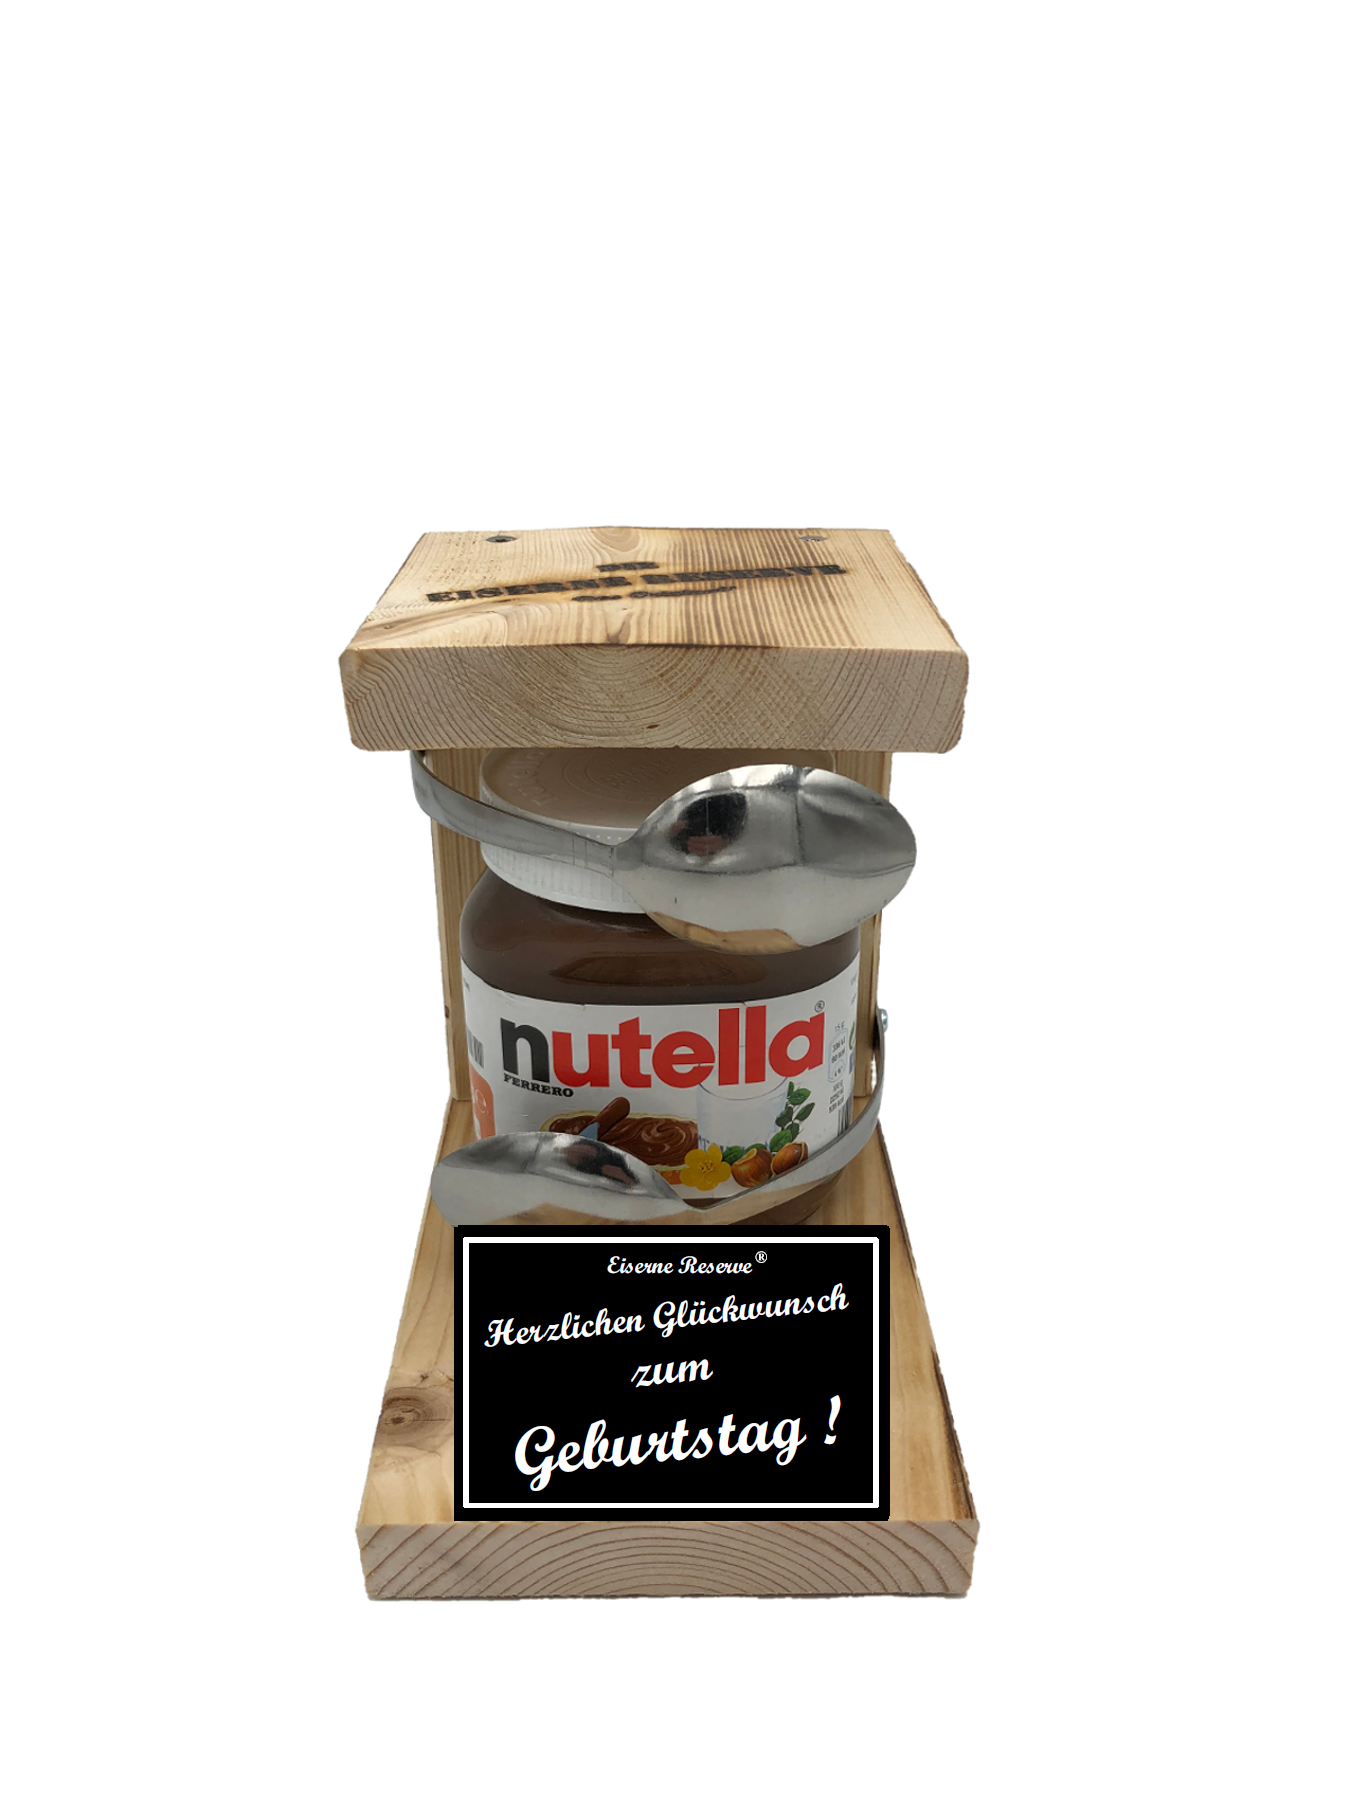 Herzlichen Glückwunsch zum Geburtstag Löffel Nutella Geschenk - Die Nutella Geschenkidee